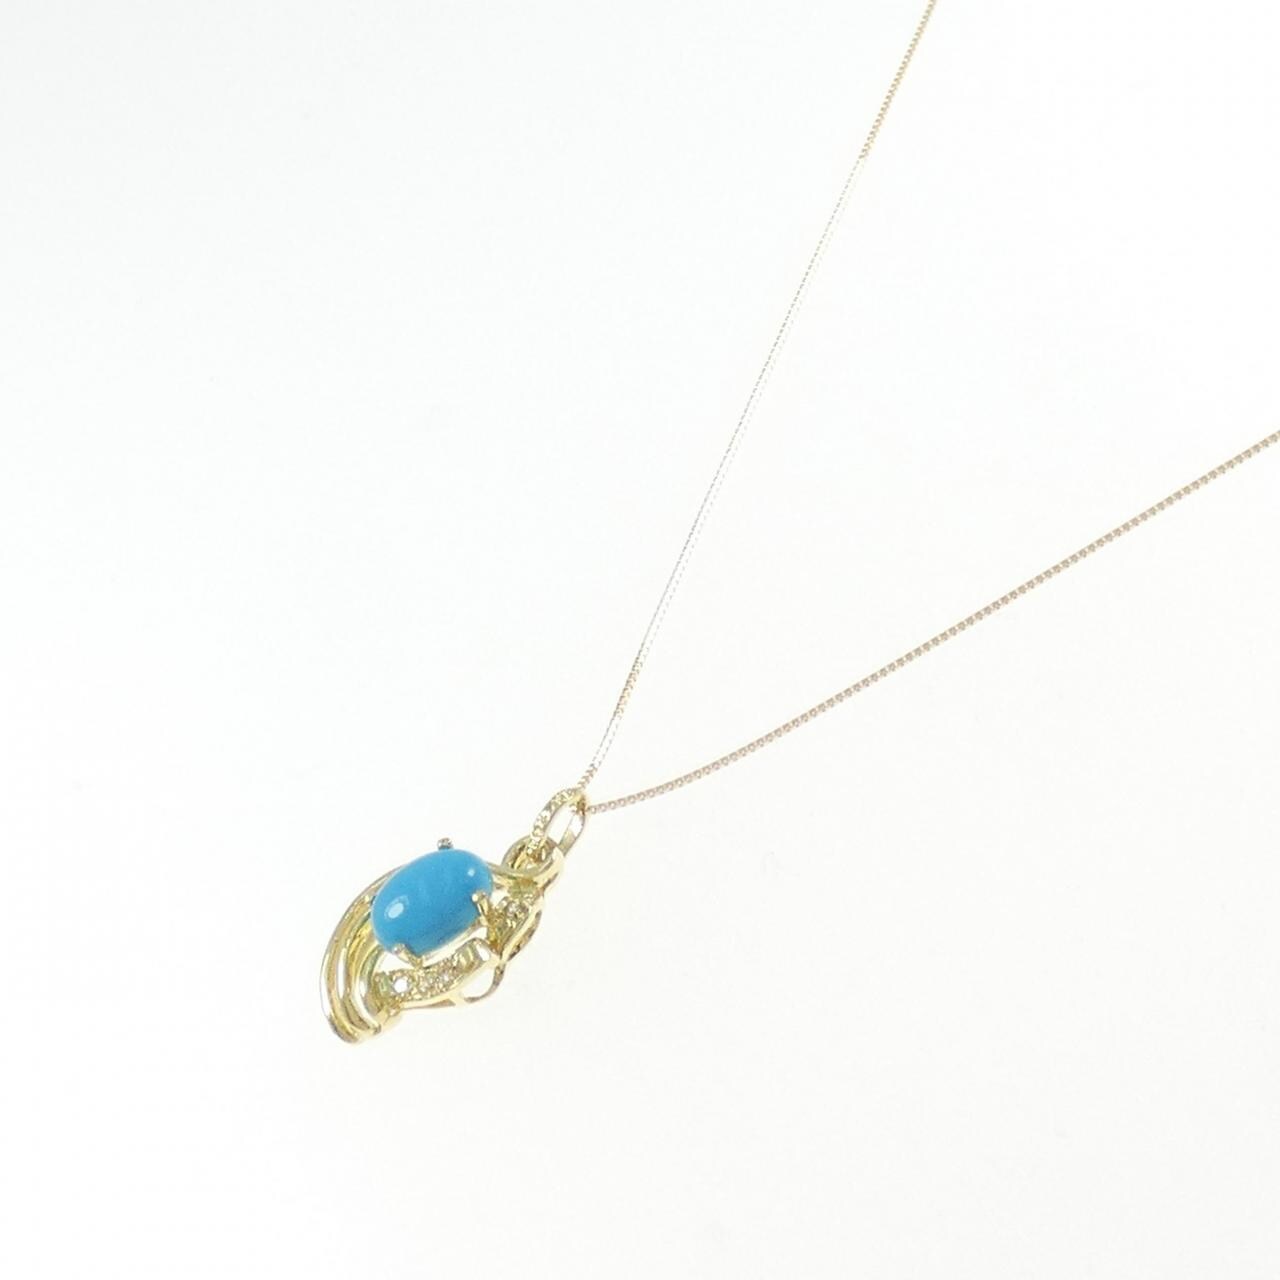 K18YG turquoise necklace